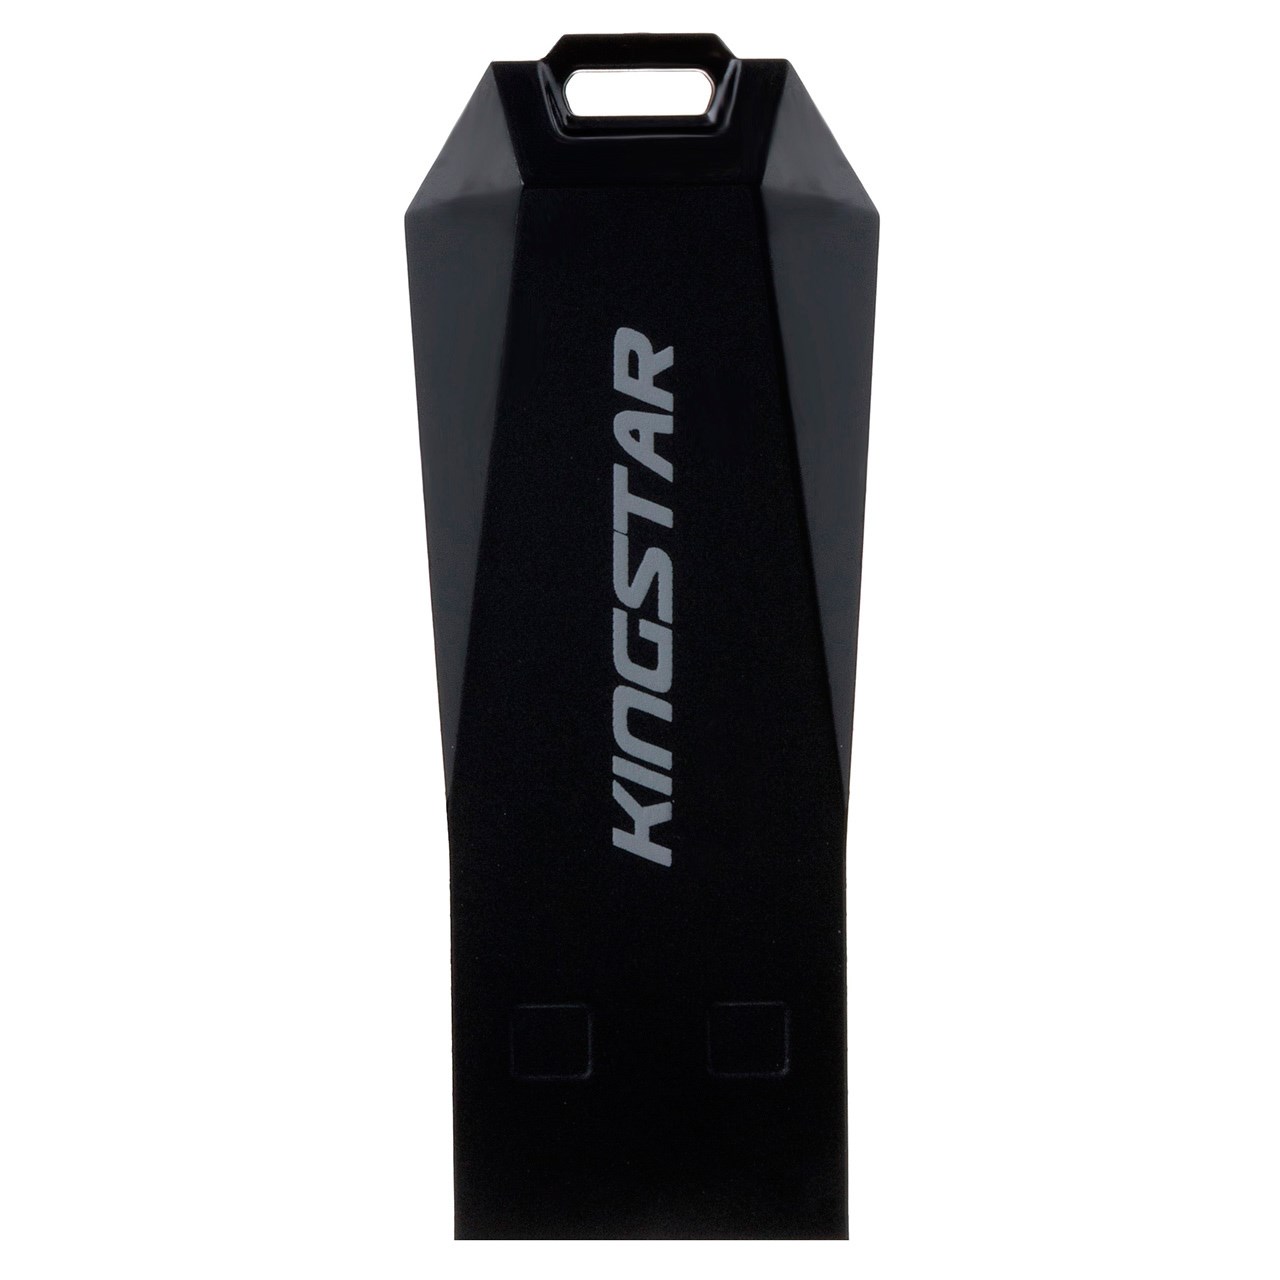 فلش مموری کینگ‌ استار مدل Slider USB KS205 ظرفیت 16 گیگابایت